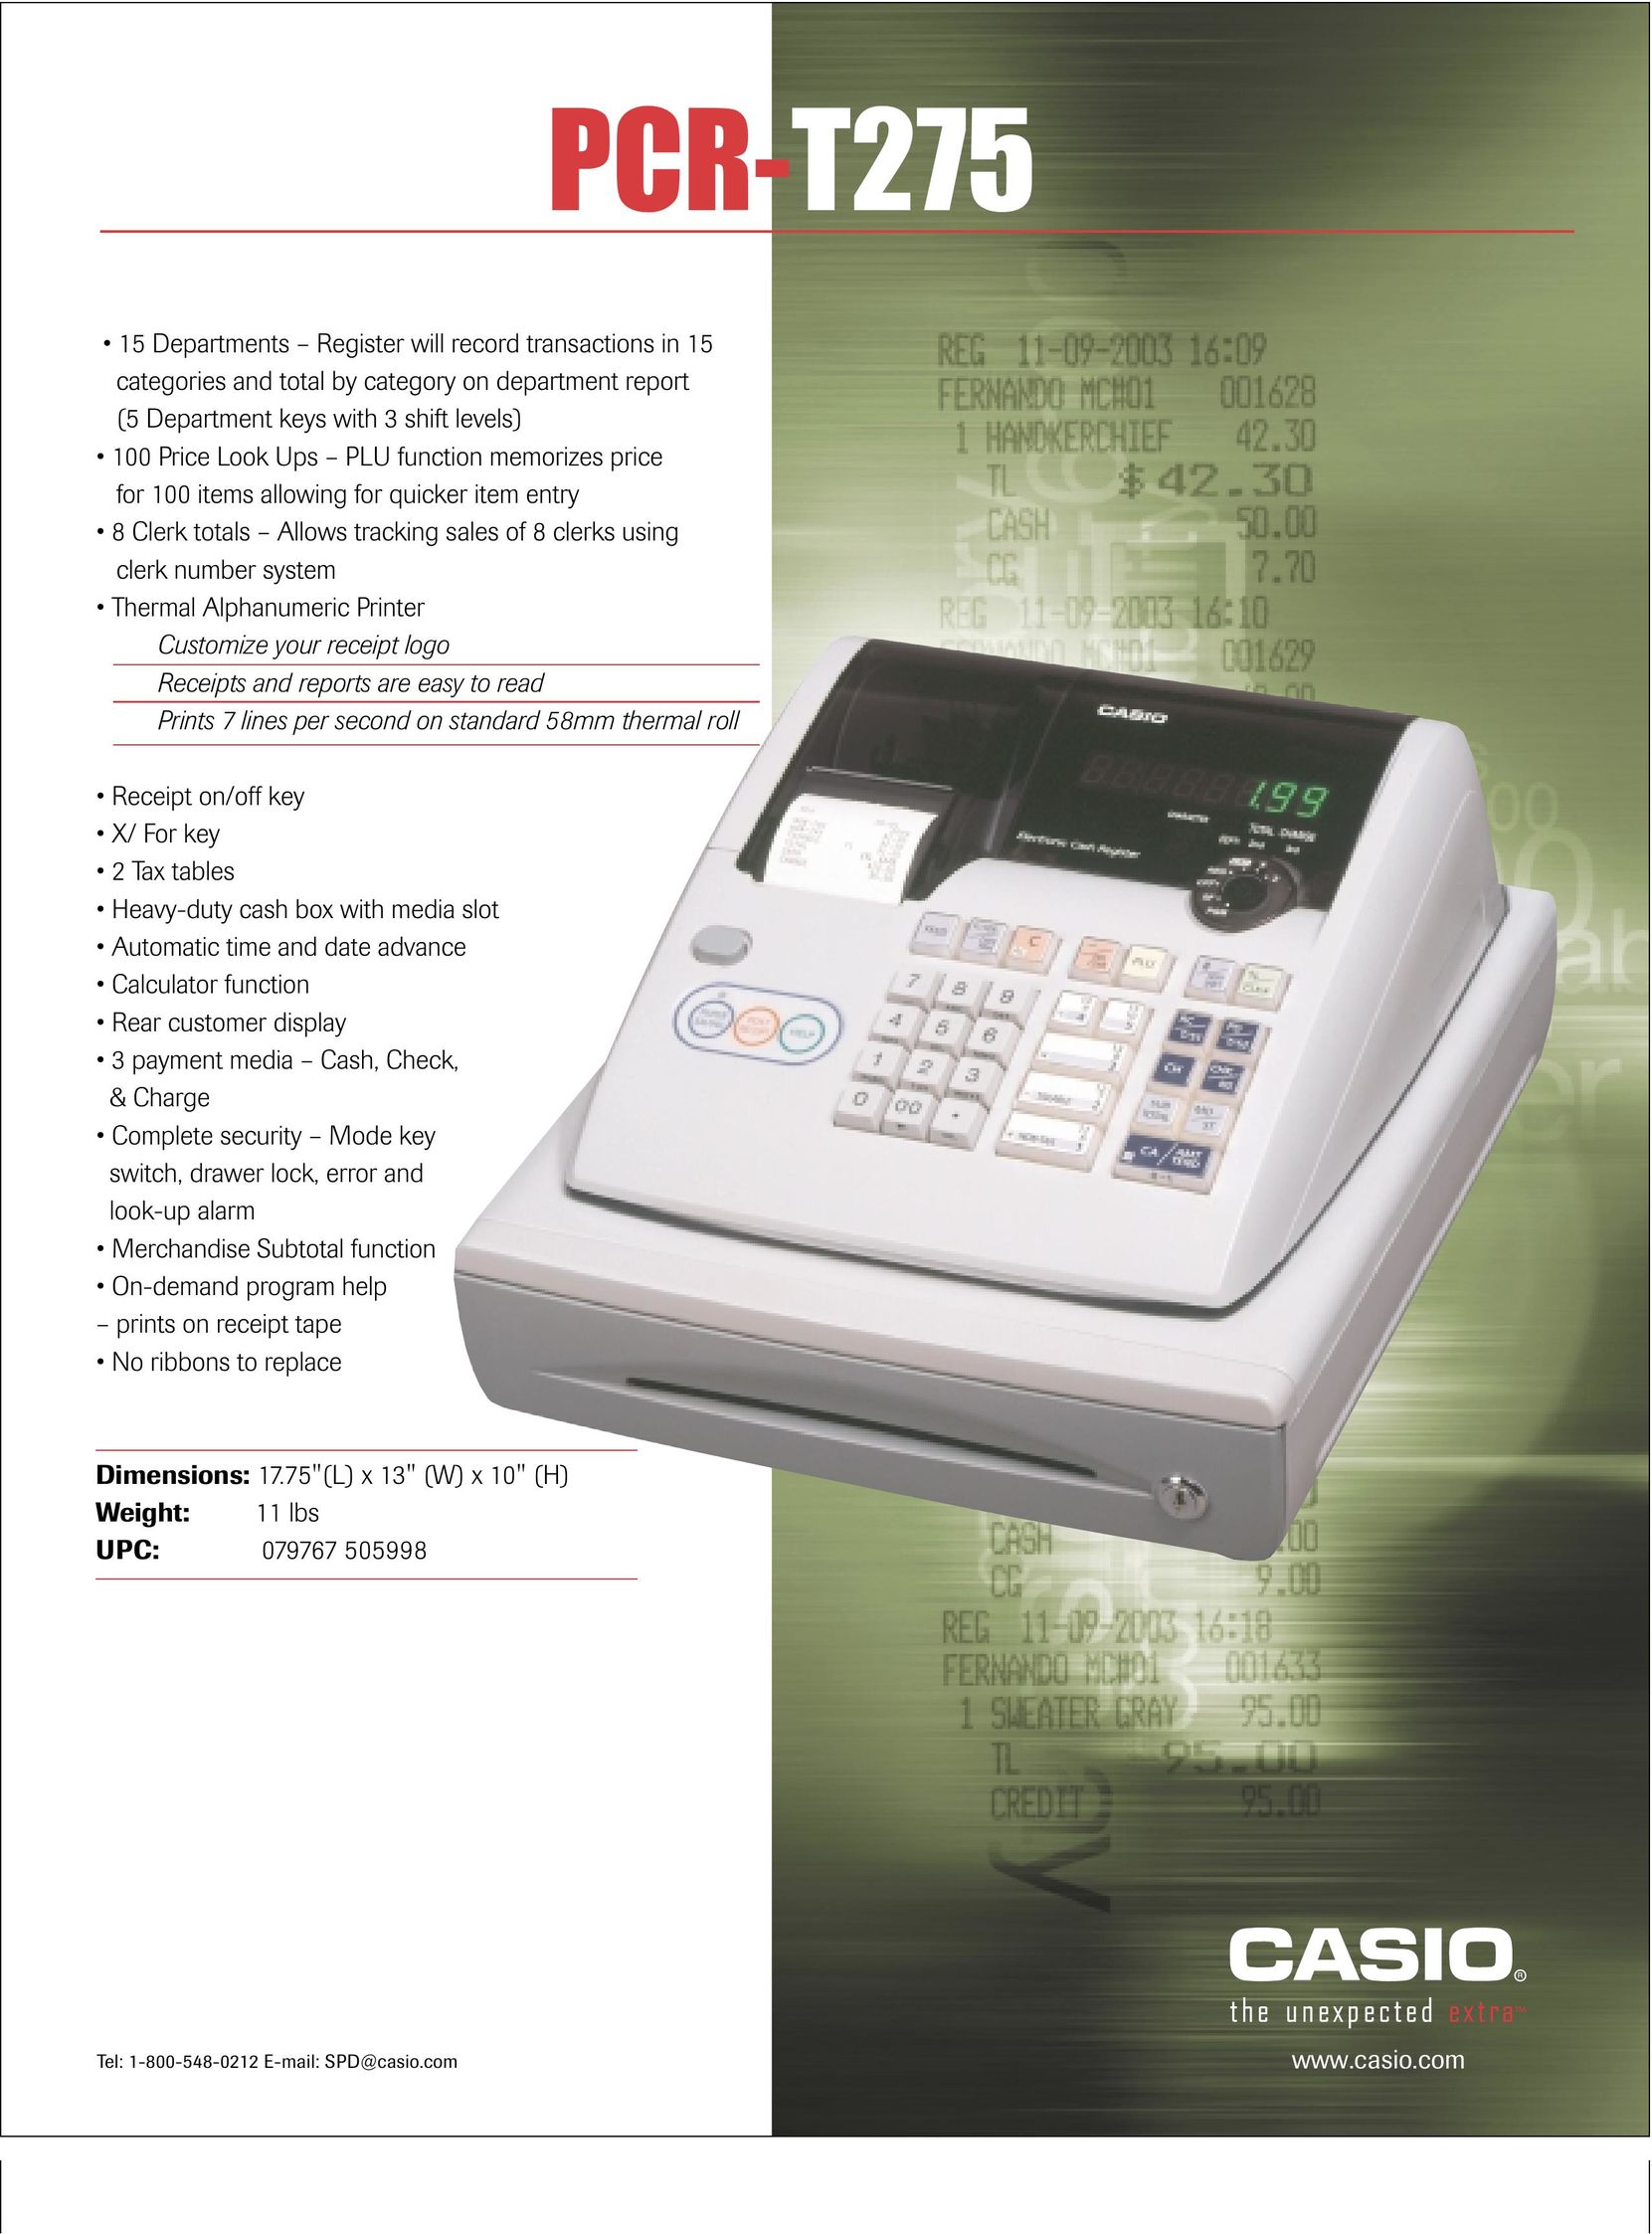 Casio PCR-T275 Cash Register User Manual